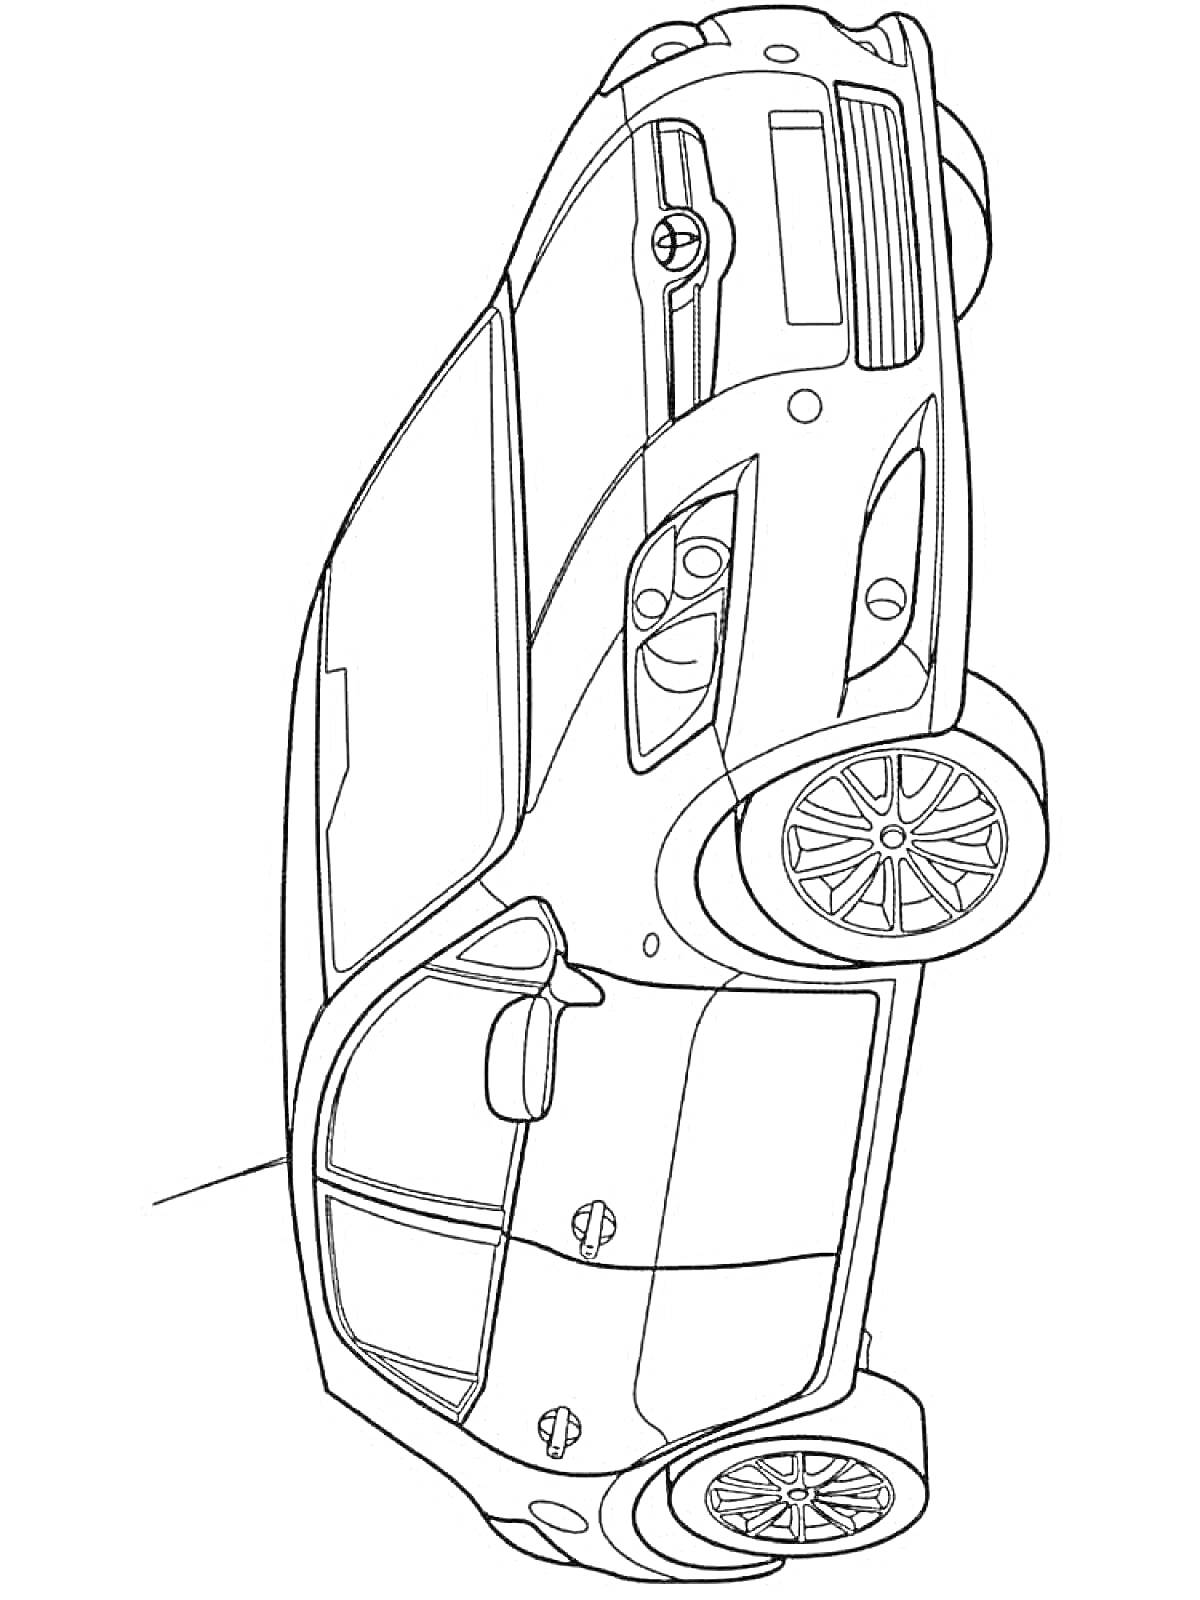 Раскраска Легковой автомобиль с двумя дверями, боковой вид